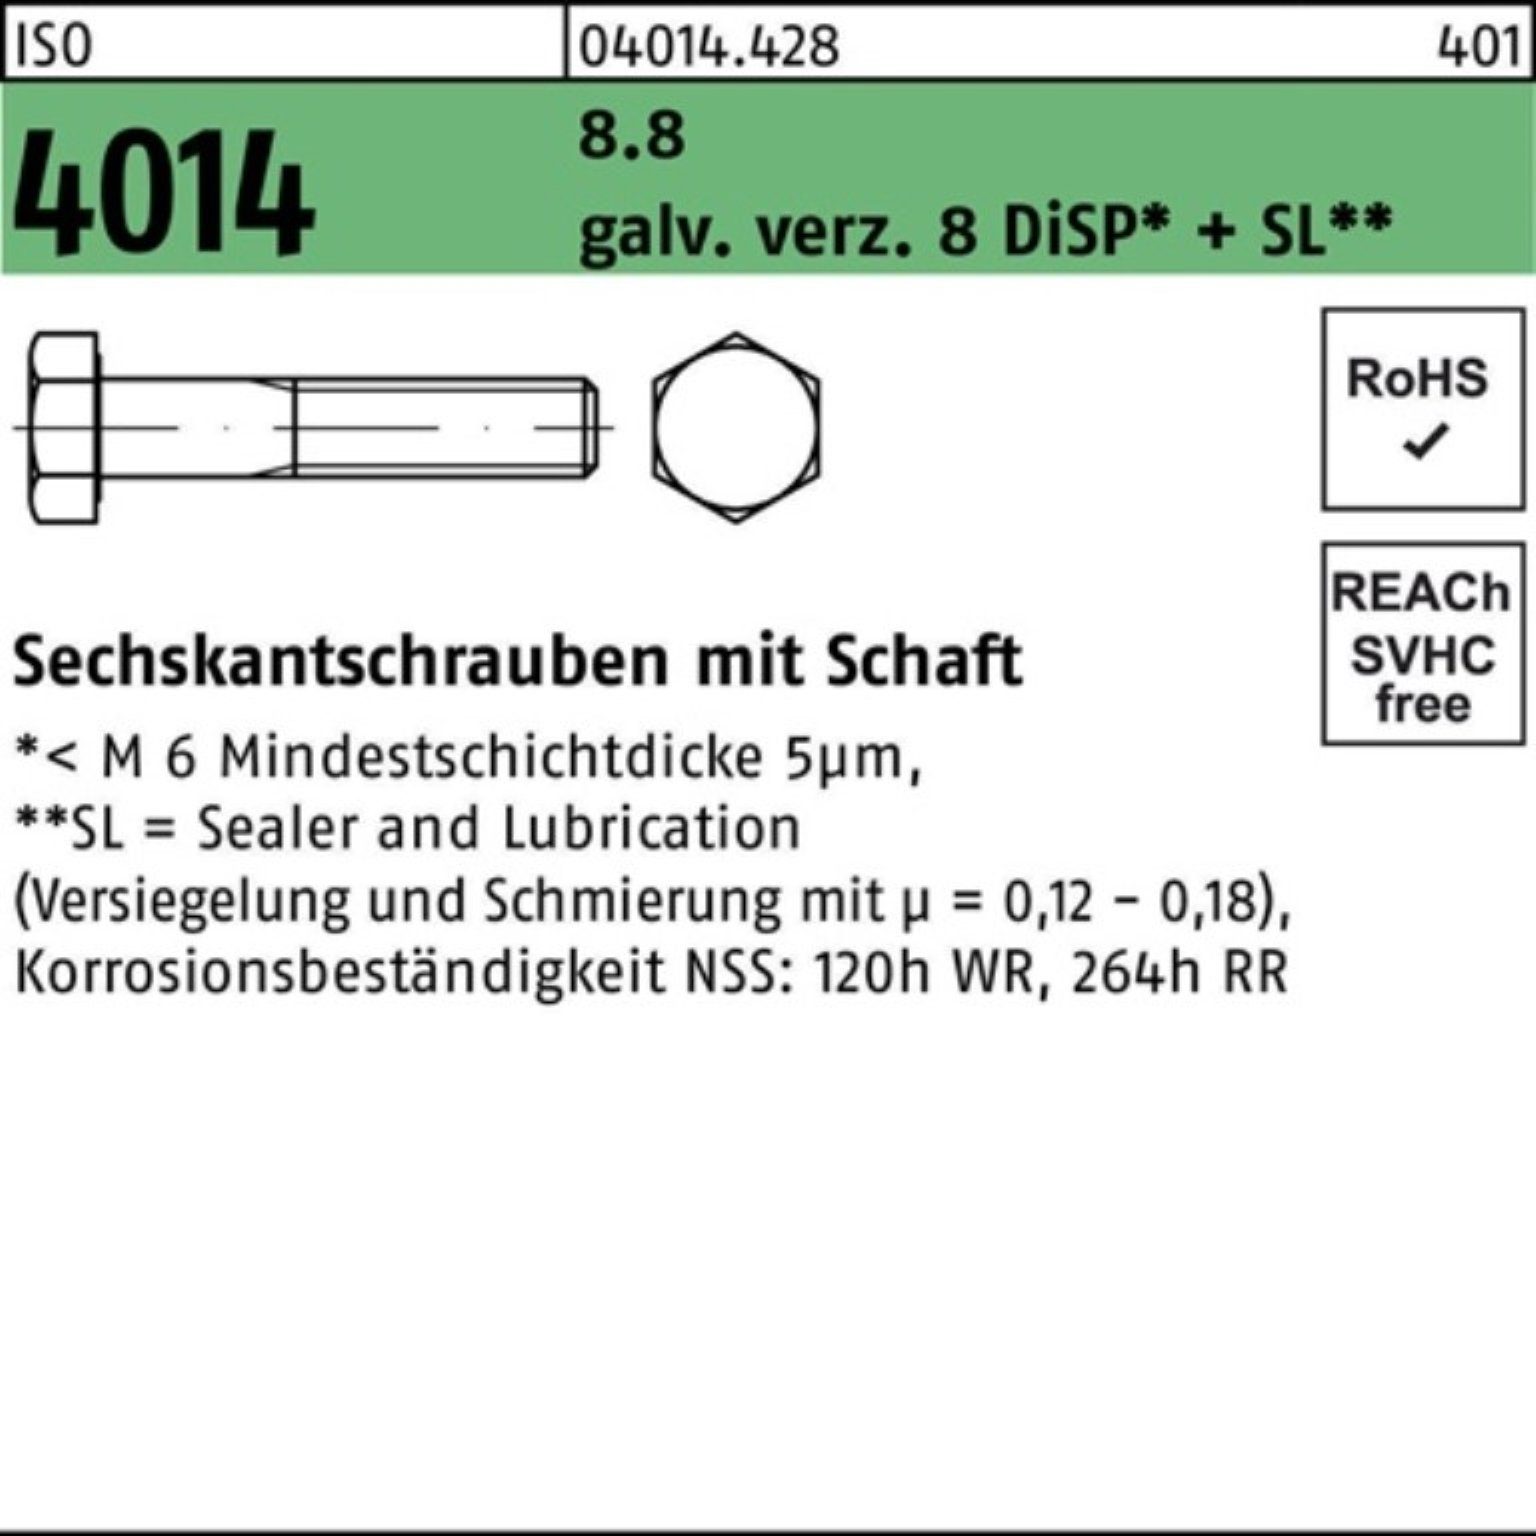 Schaft Sechskantschraube galv.verz. M12x75 ISO Pack 8 100er D Sechskantschraube 8.8 4014 Bufab